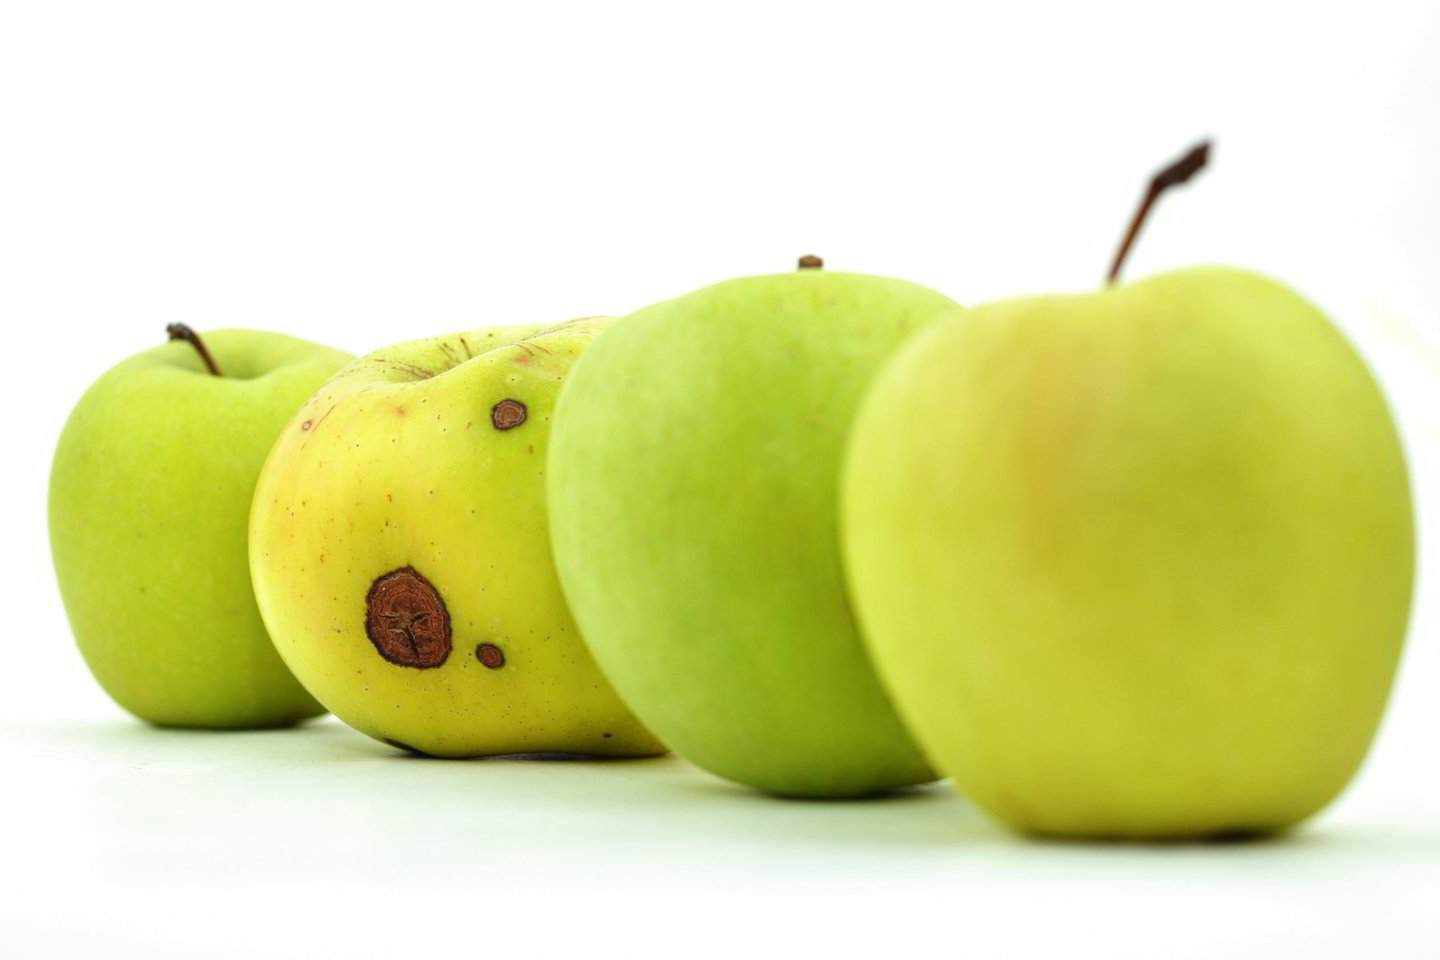 Jei tarp gerų obuolių įmaišysime vieną supuvusį, kiti obuoliai ims greičiau pūti – kol galiausiai supus visi. Taip yra todėl, kad pūdami obuoliai dujiniu pavidalu išskiria hormoną, vadinamą etilenu<br> 123RF iliustr